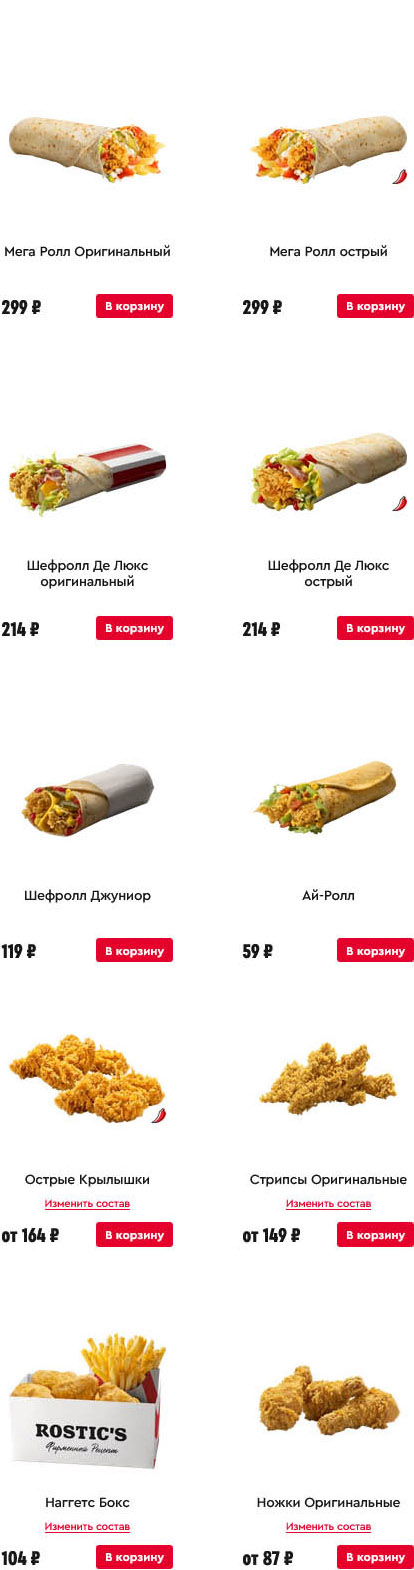 Иркутск сайт KFC меню